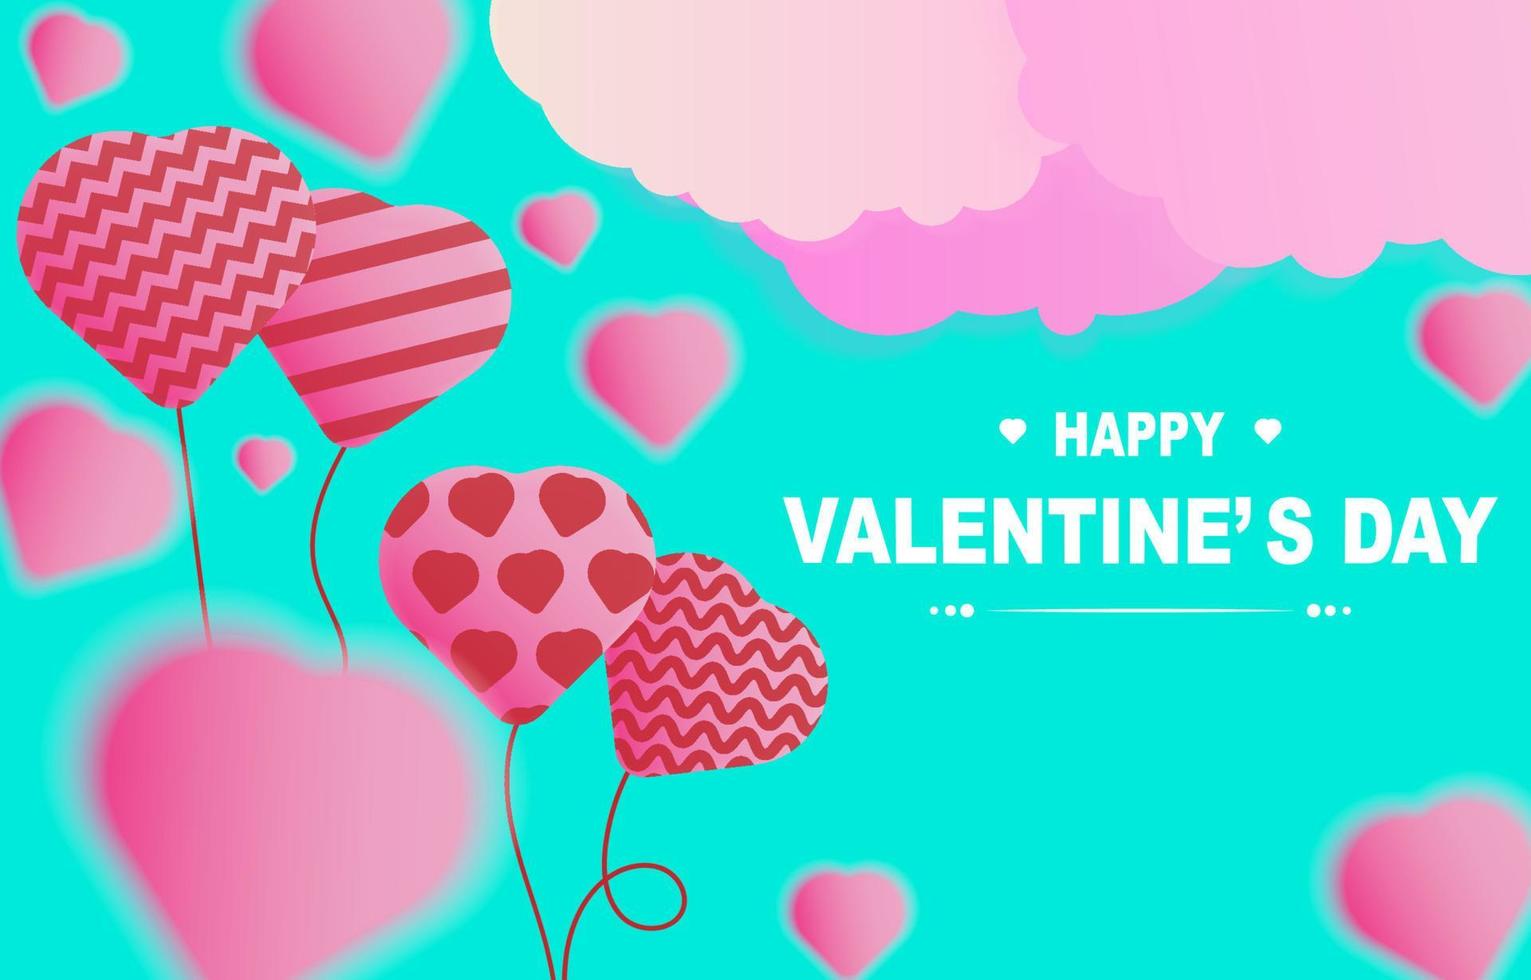 Happy Valentine's Day Template mit Text, Luftballons, Wolken und verschwommenen Herzen auf türkisgrünem Hintergrund. Design für Werbung, Poster, Banner, Online-Shopping. Vektor-Illustration. vektor